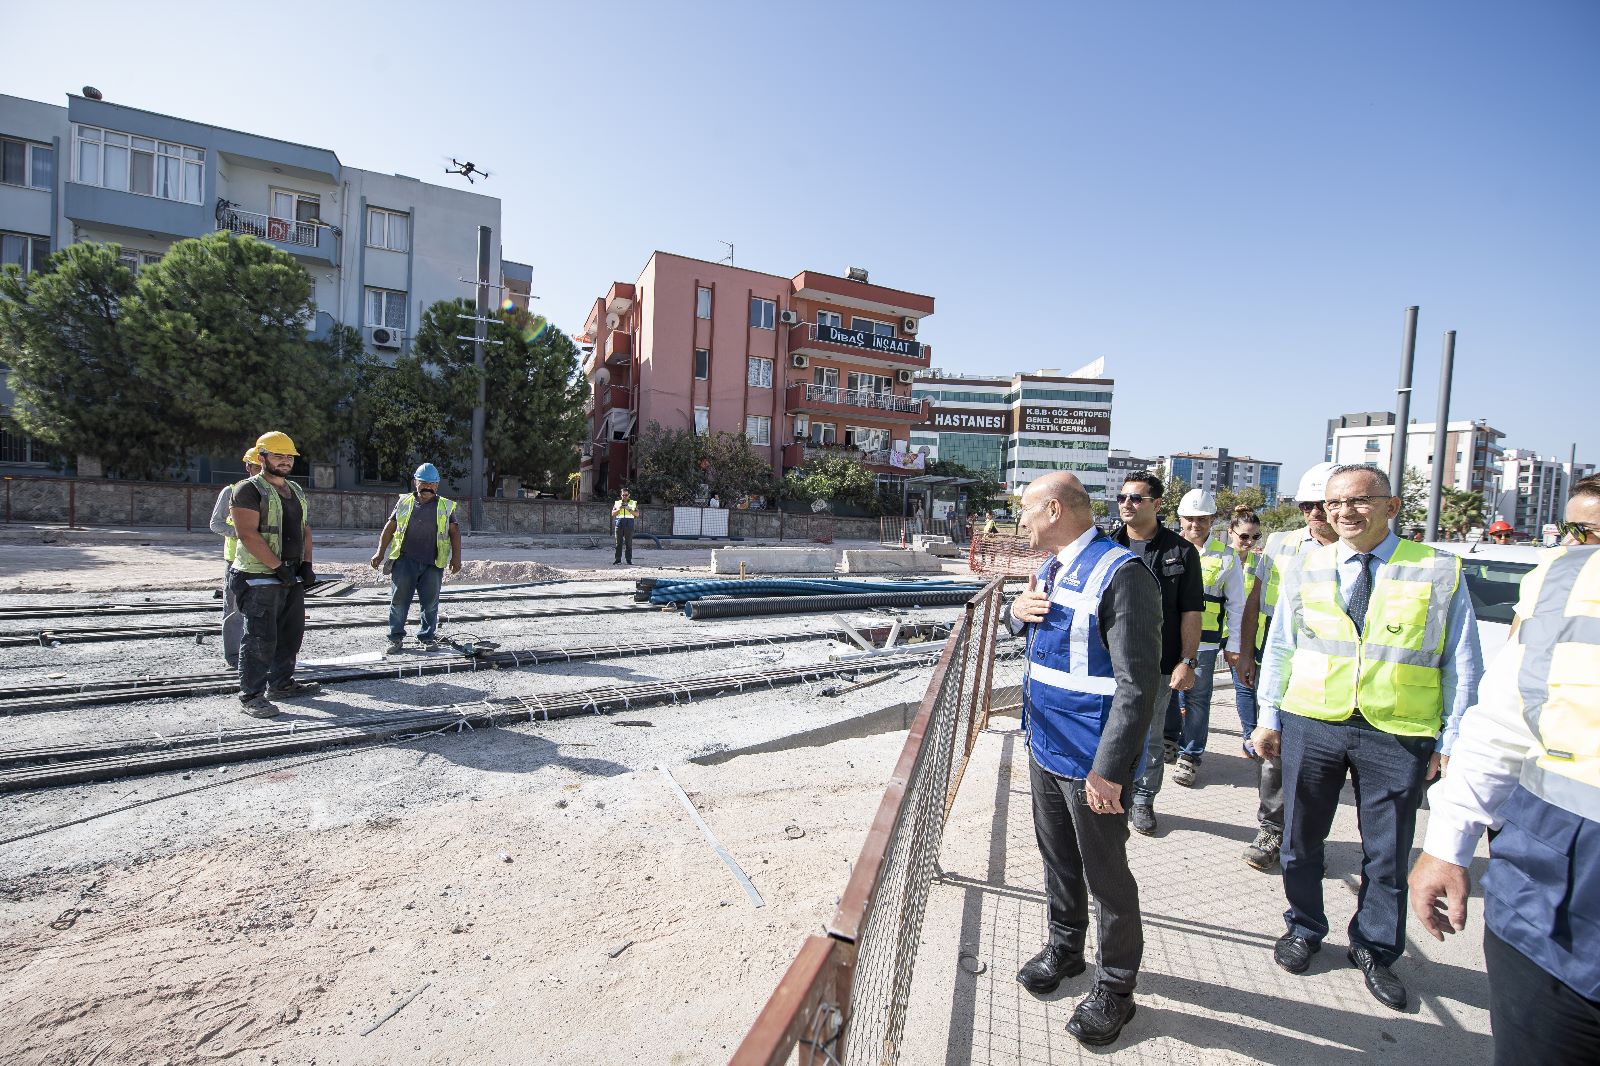 ulaşım İzmir Büyükşehir Belediyesi döviz kurlarındaki rekor artışların damga vurduğu 2022’de, kentin toplu ulaşımını çağdaş standartlara taşıma hedefi doğrultusunda tarihi yatırımlara imza attı. ESHOT ve İZDENİZ, yeni yatırımlarla güçlendirilirken raylı sistemde yeni bir döneme geçildi. İzmir’in en büyük yatırımı Buca Metrosu’nun inşaatına başlandı, Narlıdere Metrosu ve Çiğli Tramvayı’nda ise sona gelindi.